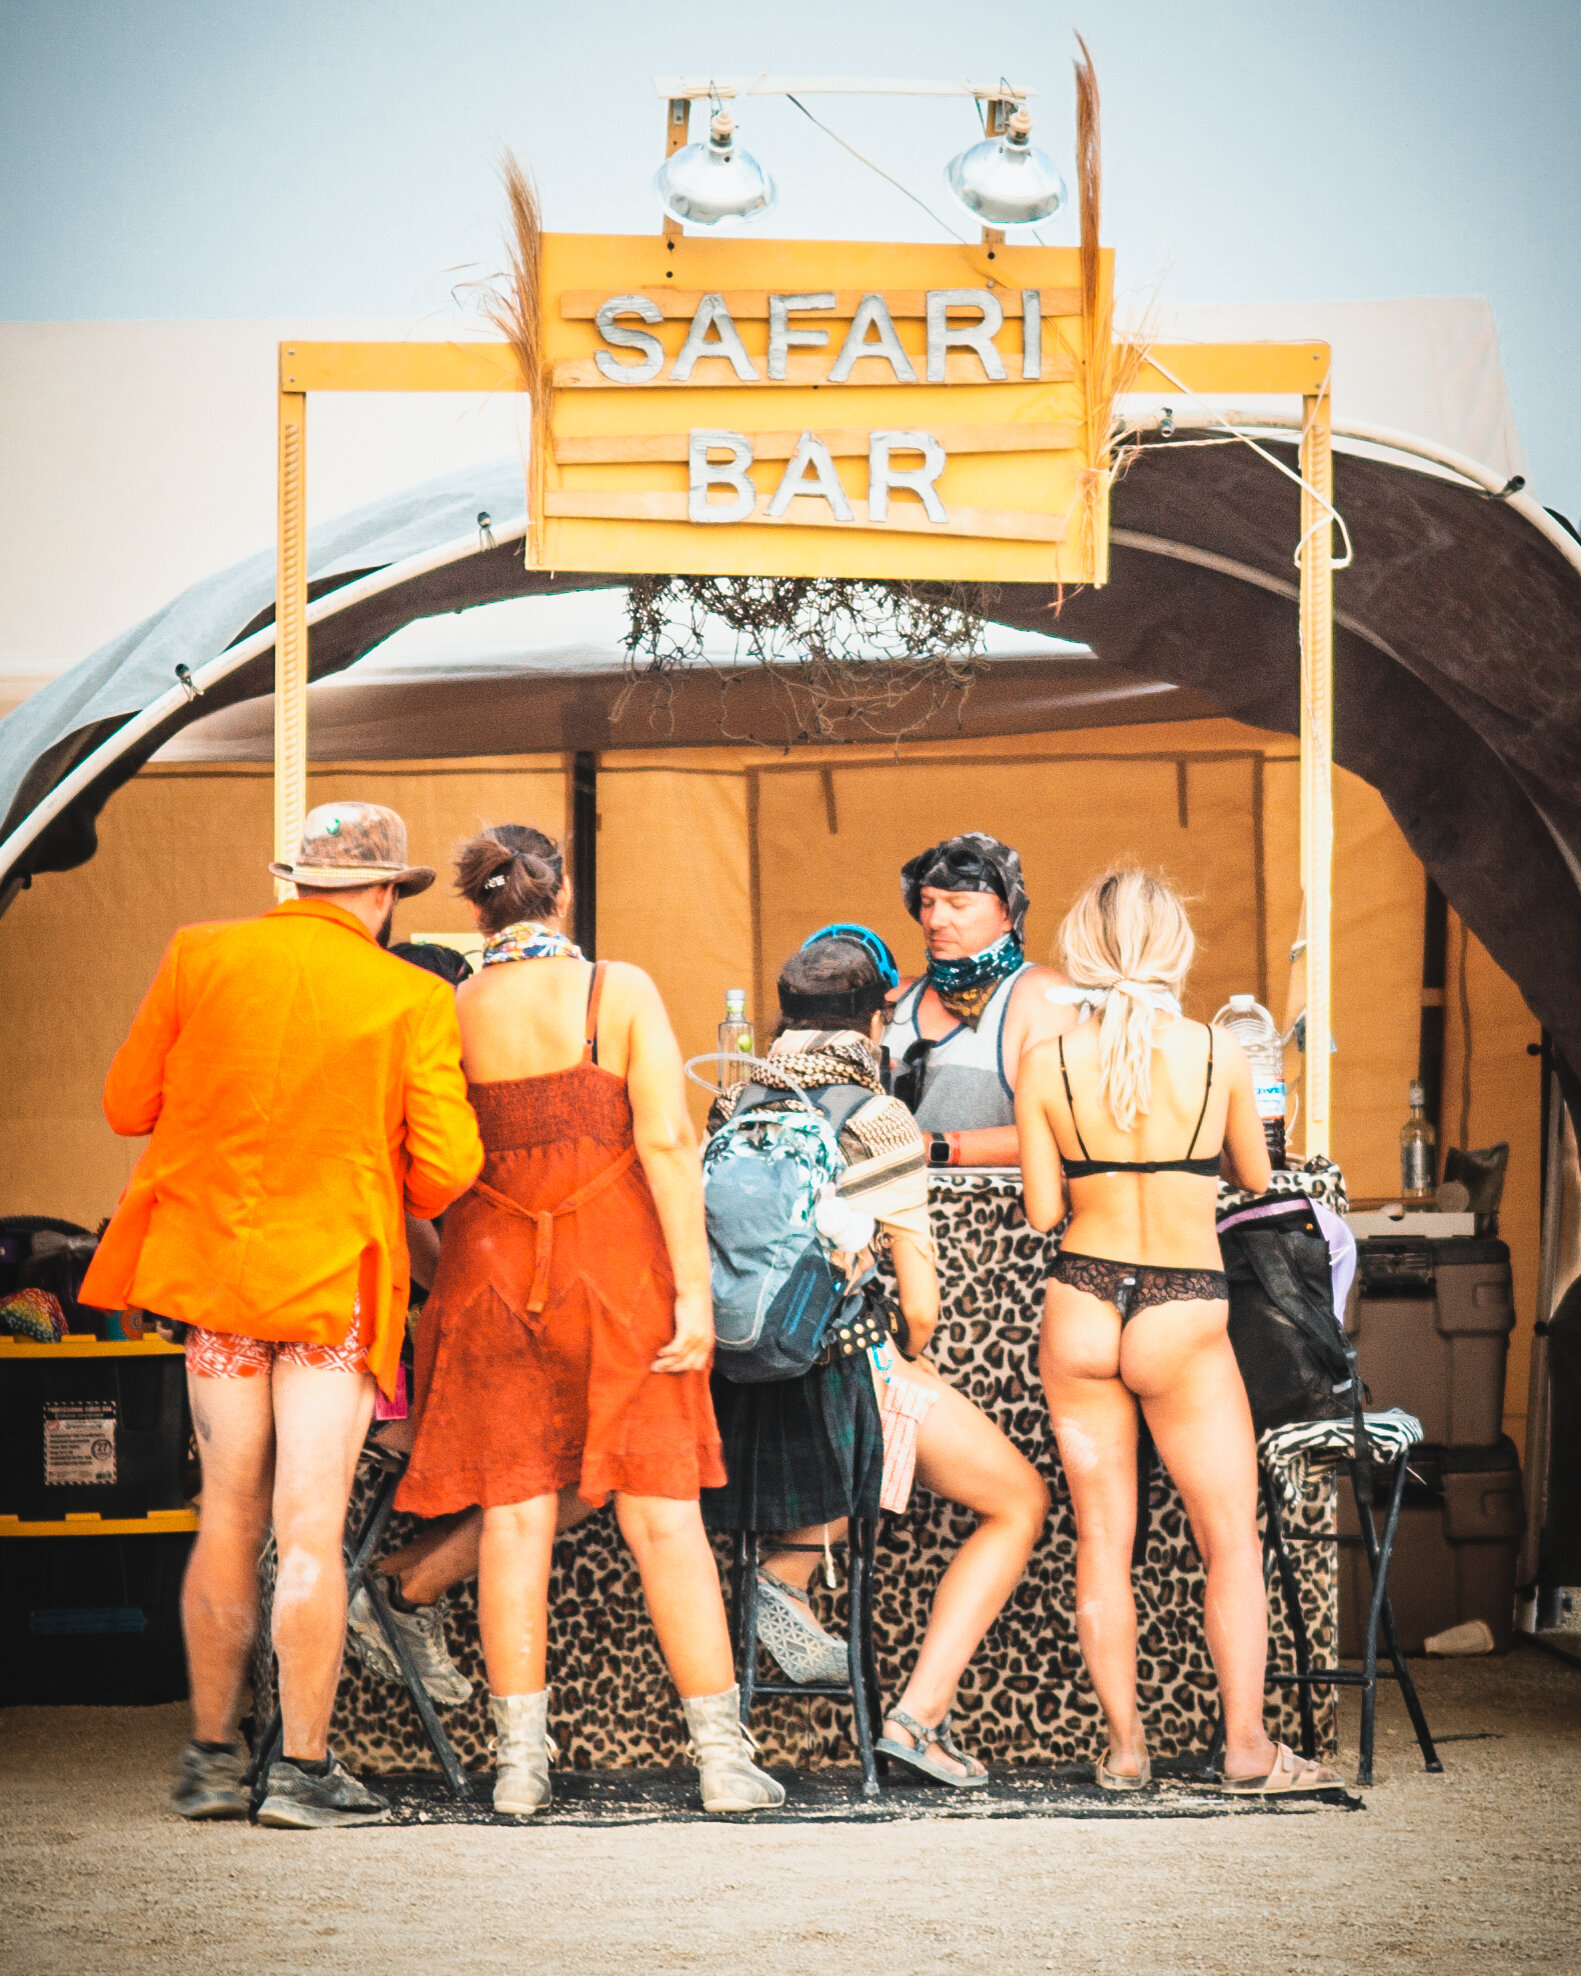 Burning Man 2019 - Safari Bar